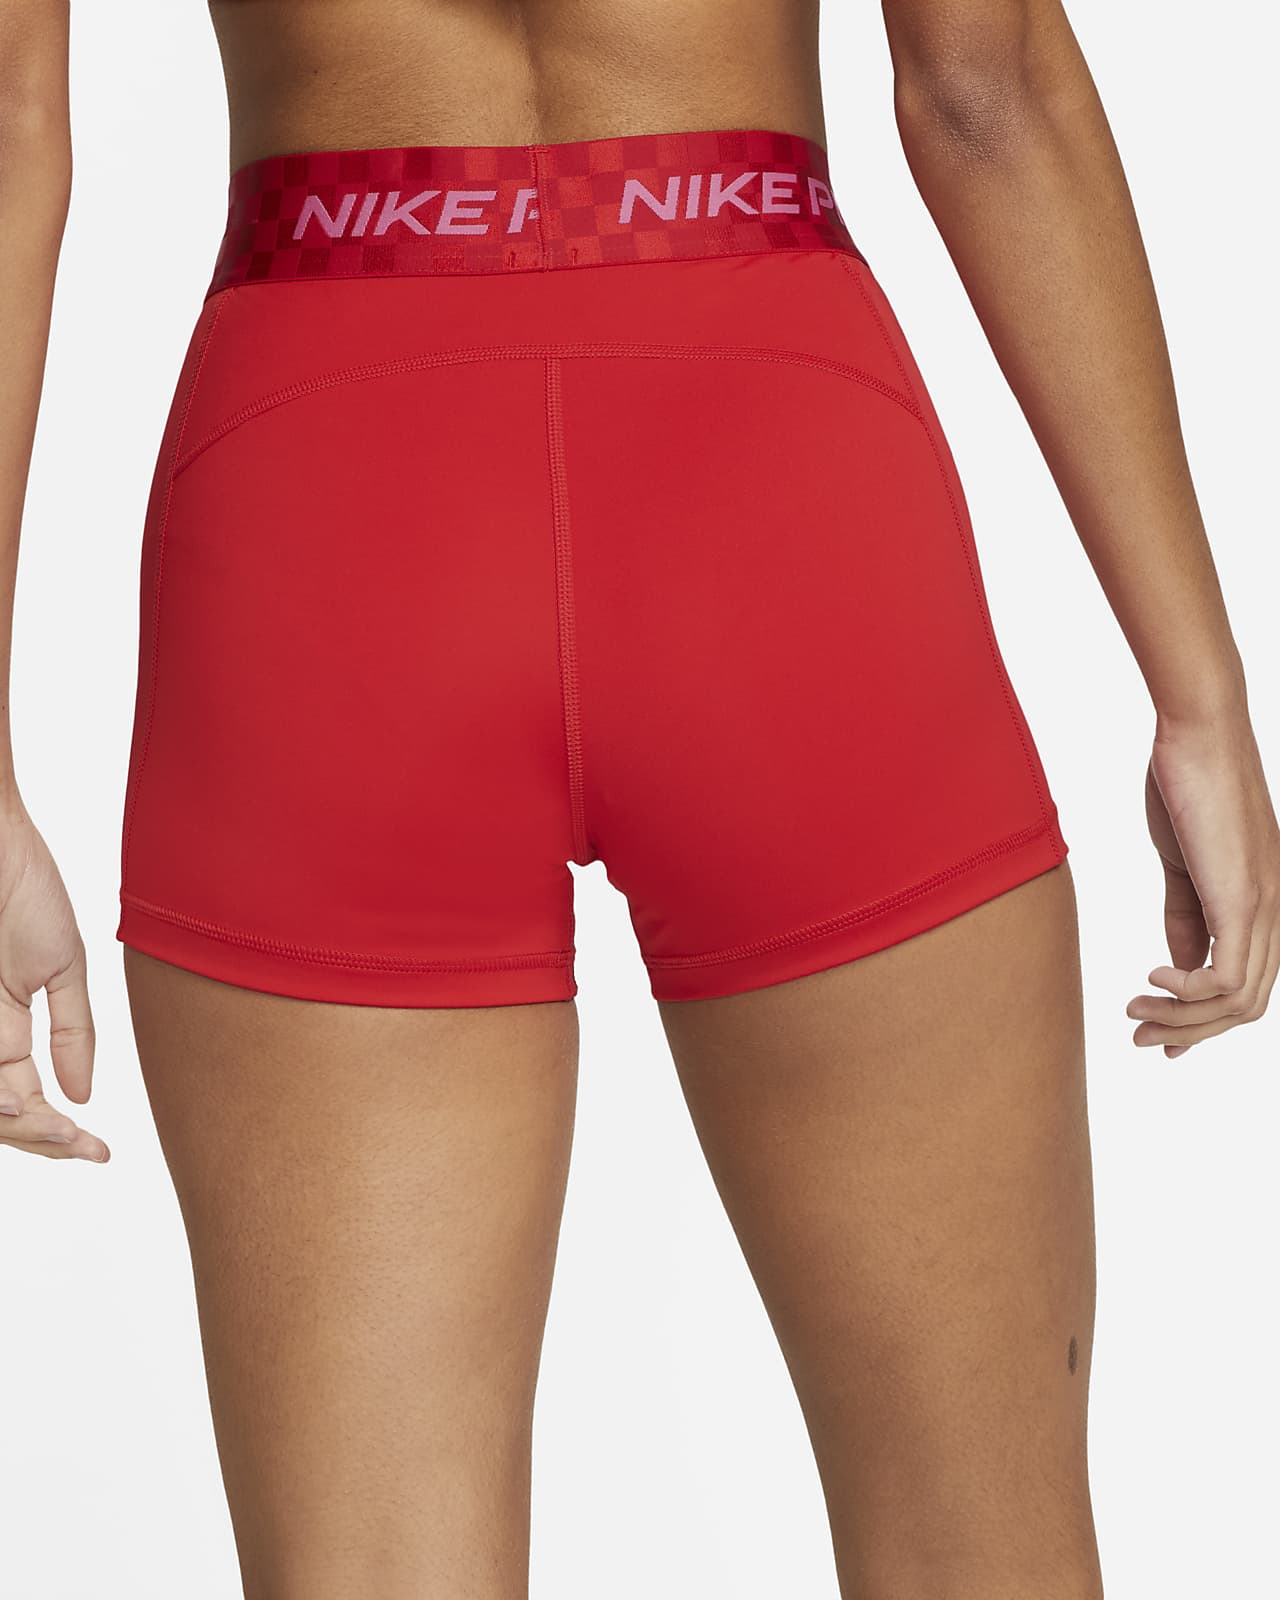 Women's Nike Athletics Canada Pro Shorts